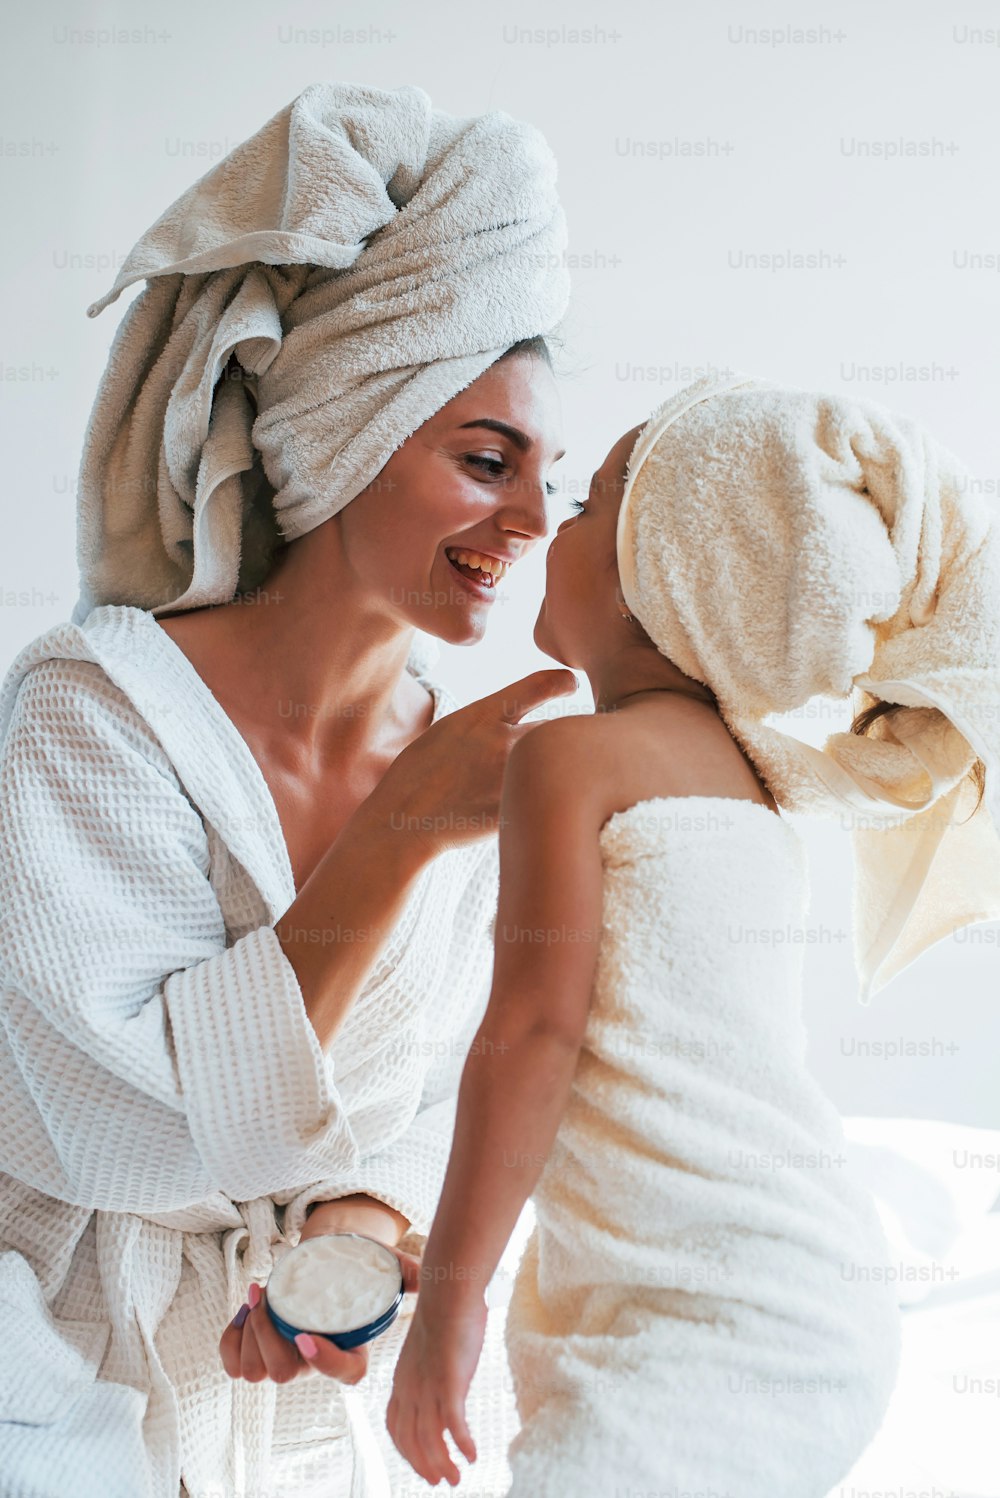 Usar crema para limpiar la piel. La joven madre con su hija tiene un día de belleza en el interior de la habitación blanca.